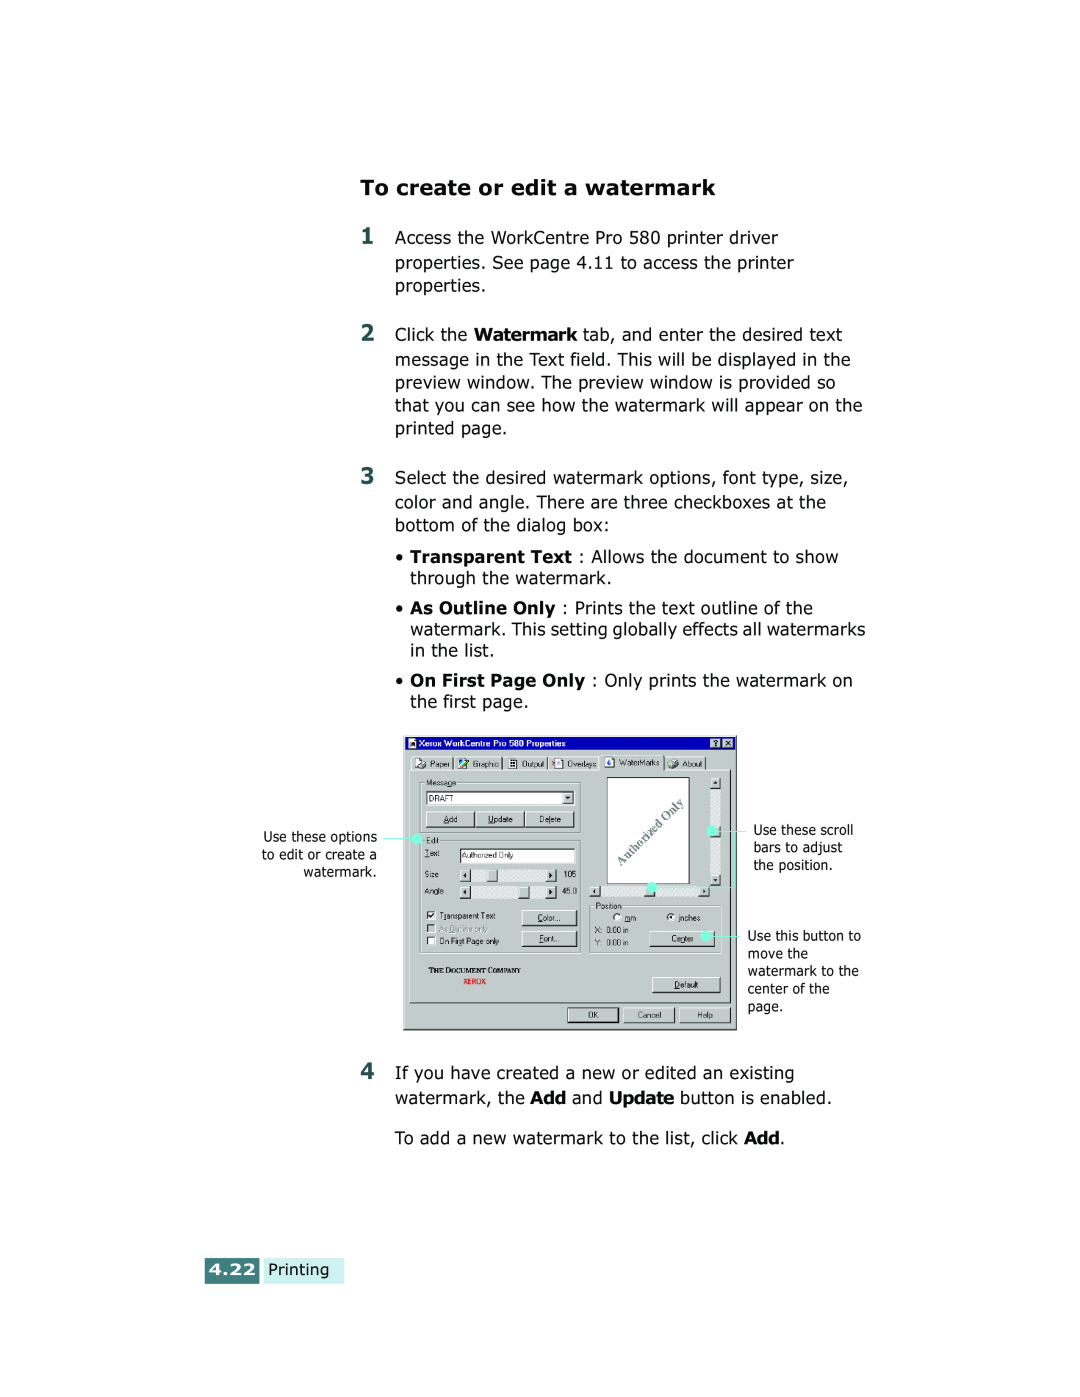 Xerox Pro 580 manual To create or edit a watermark, Printing 